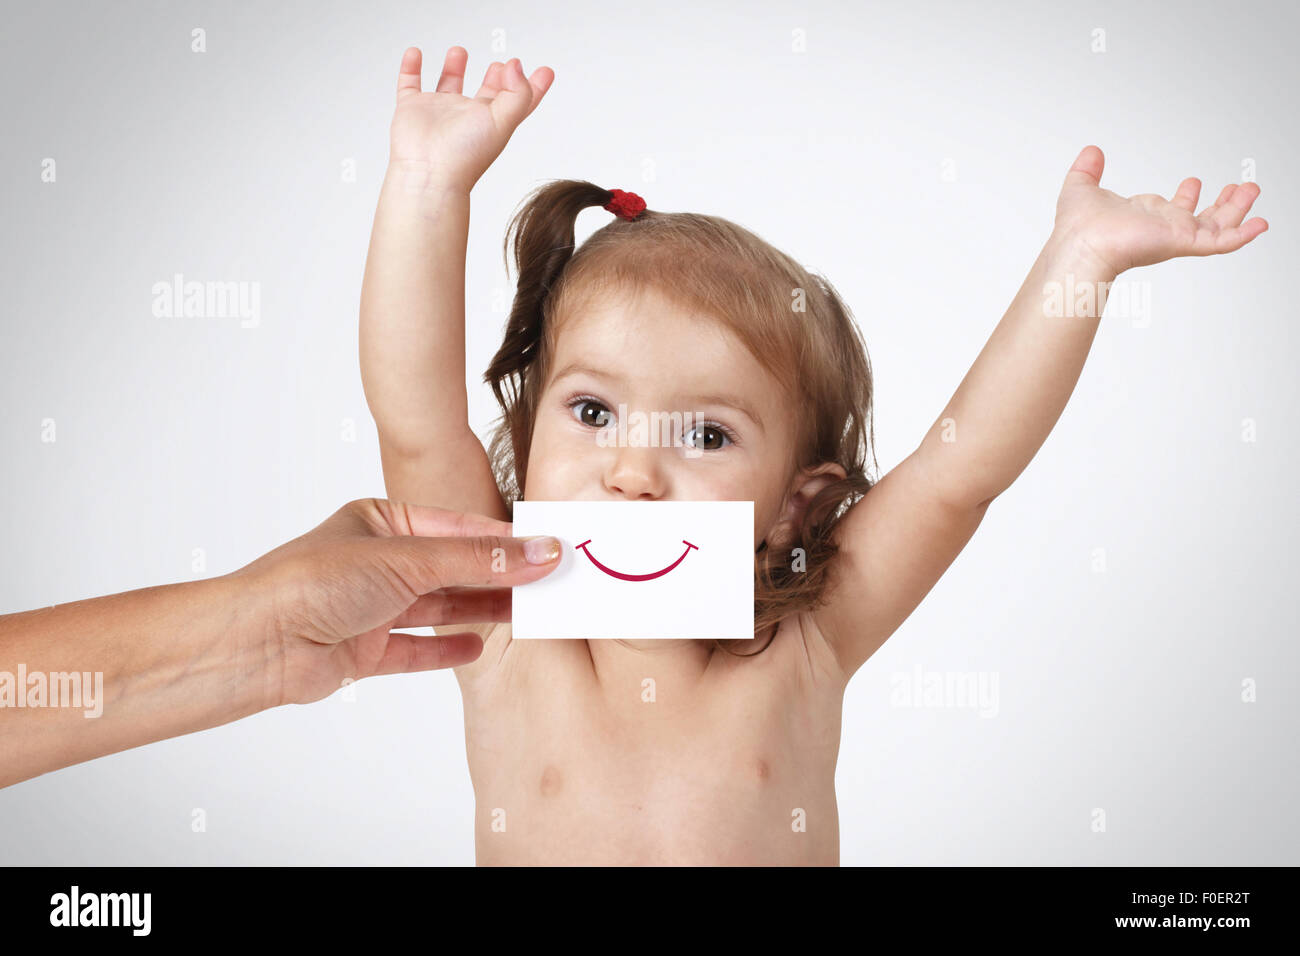 Glücklich fröhliche Babymädchen versteckt ihr Gesicht mit der hand mit Lächeln auf Papier auf grauem Hintergrund gezeichnet Stockfoto